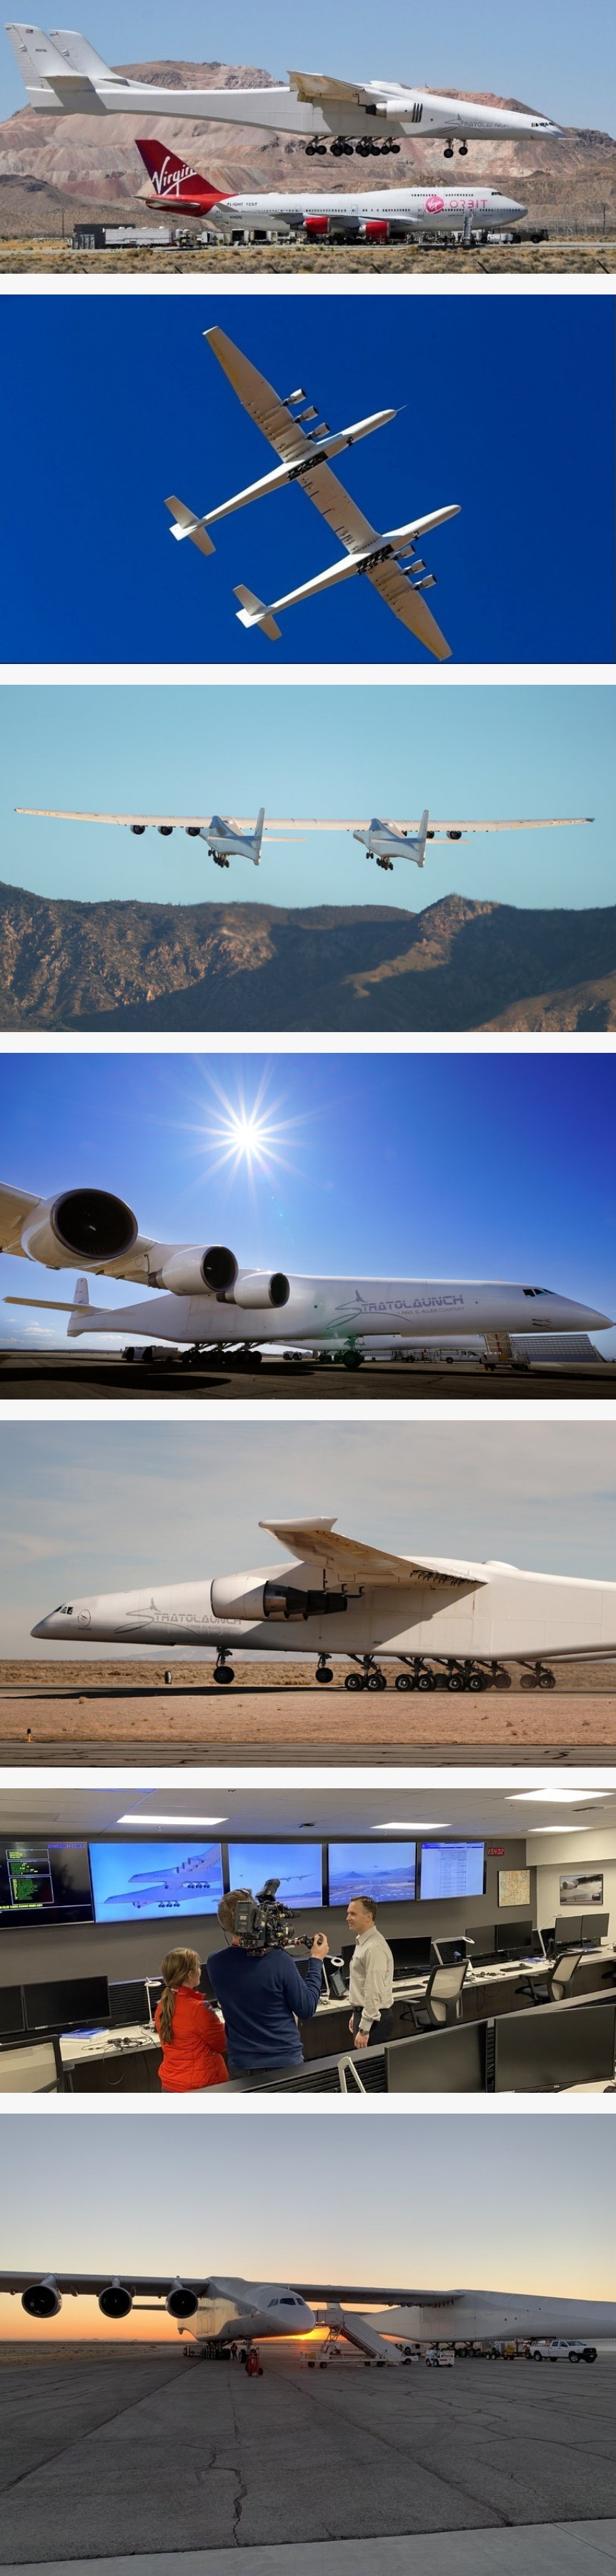 세계에서 가장 큰 항공기